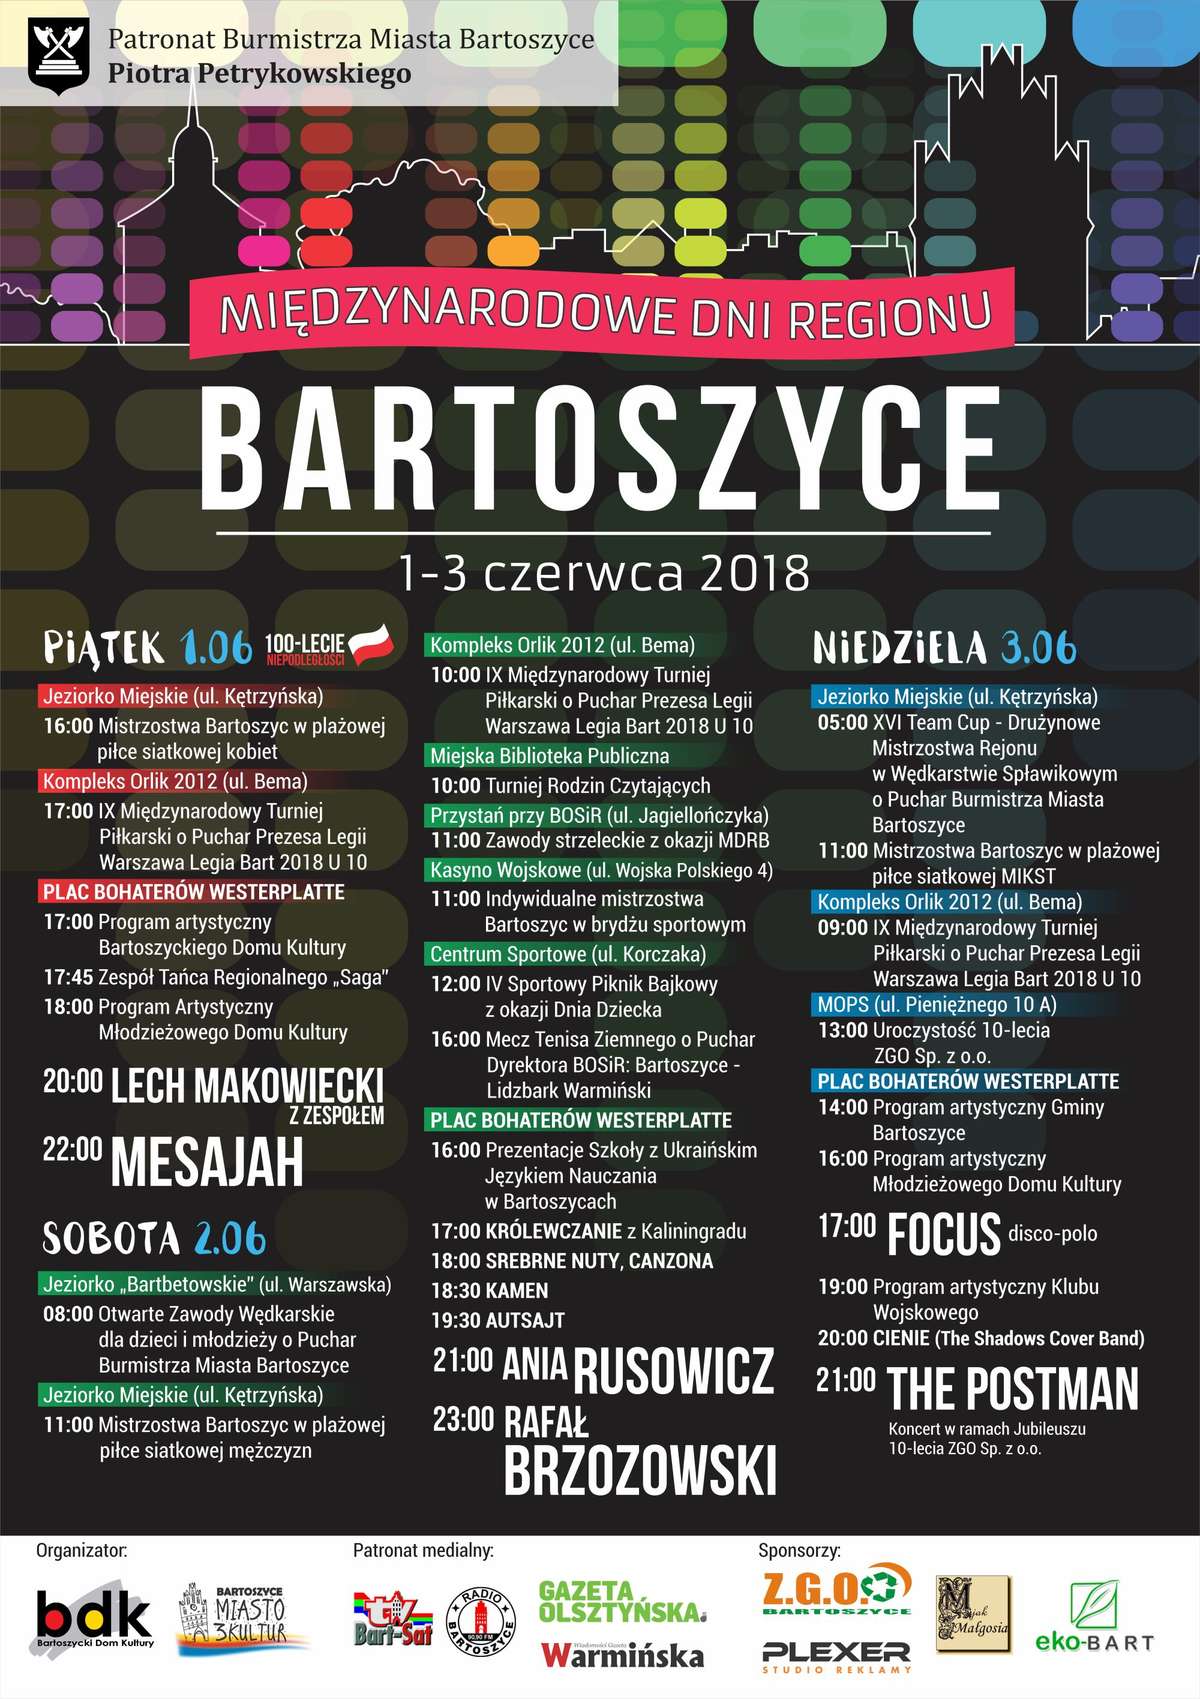 Międzynarodowe Dni Regionu Bartoszyce 2018 - full image